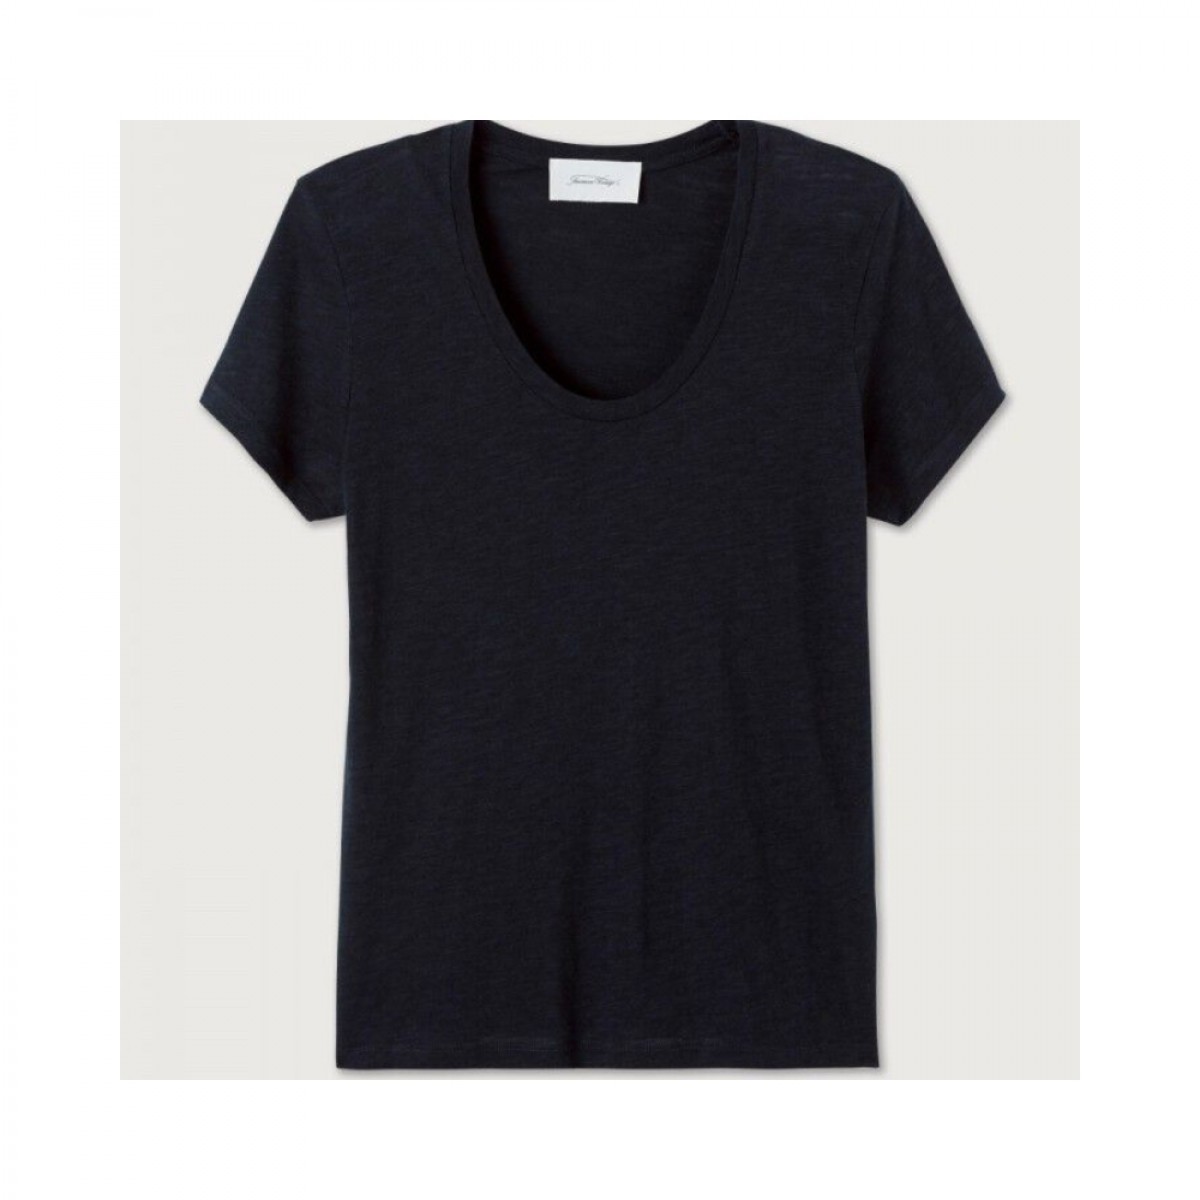 jacksonville t-shirt - noir - model bagfra